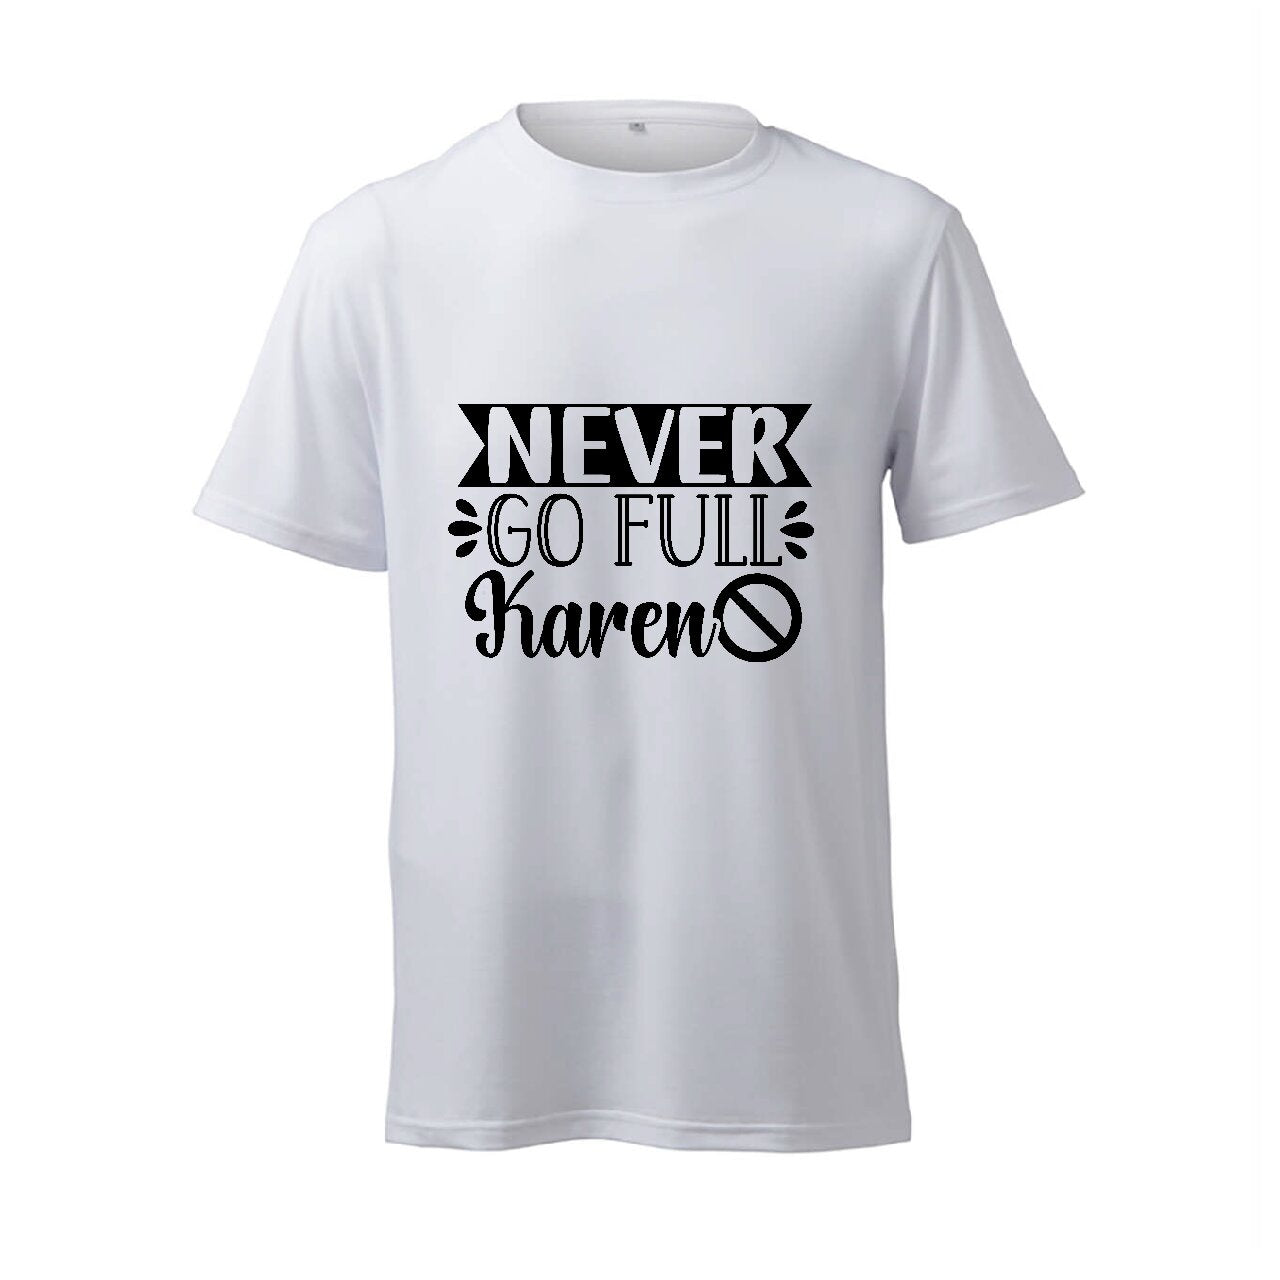 Never Go Full Karen - T-Shirt